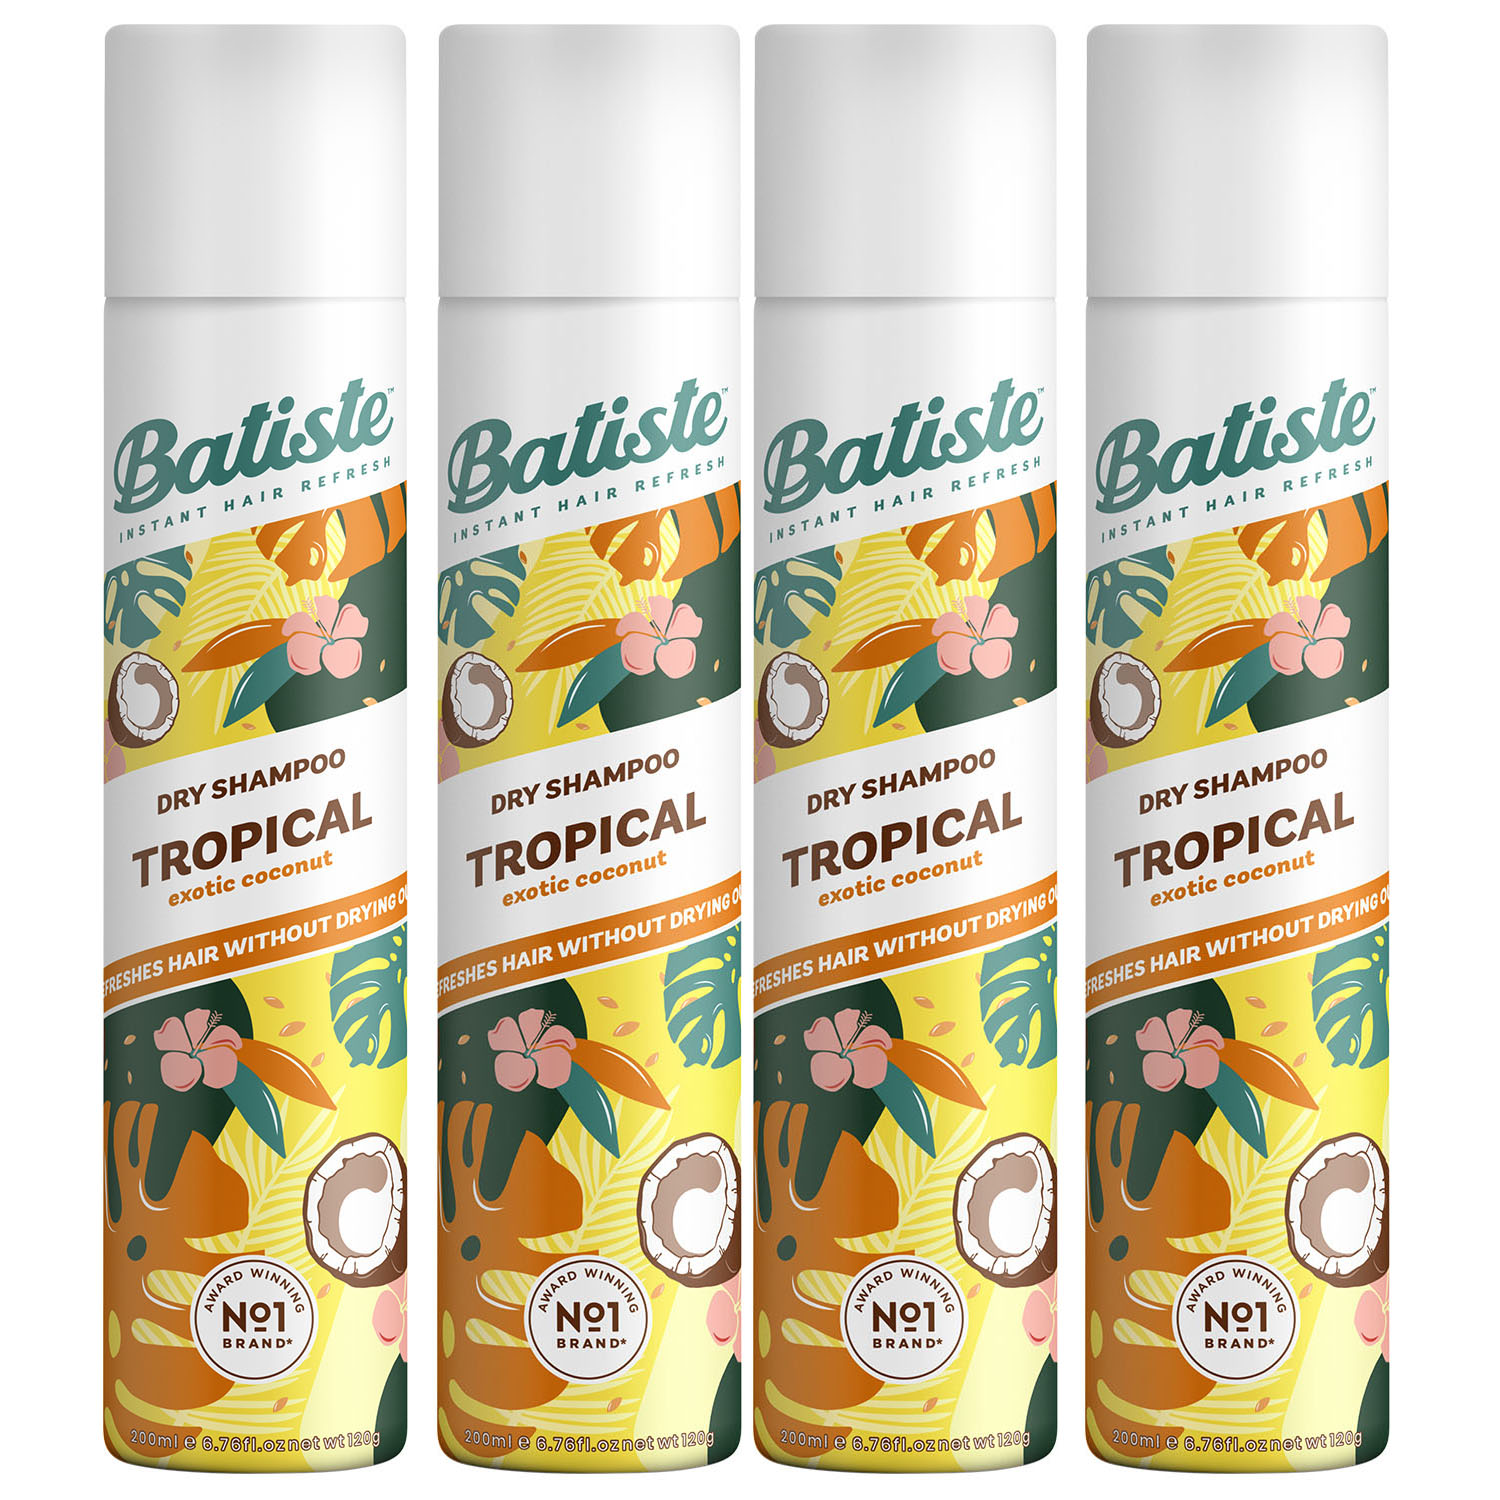 Batiste Комплект Tropical Сухой шампунь 4 шт х 200 мл (Batiste, Fragrance) batiste сухой шампунь tropical 200 мл